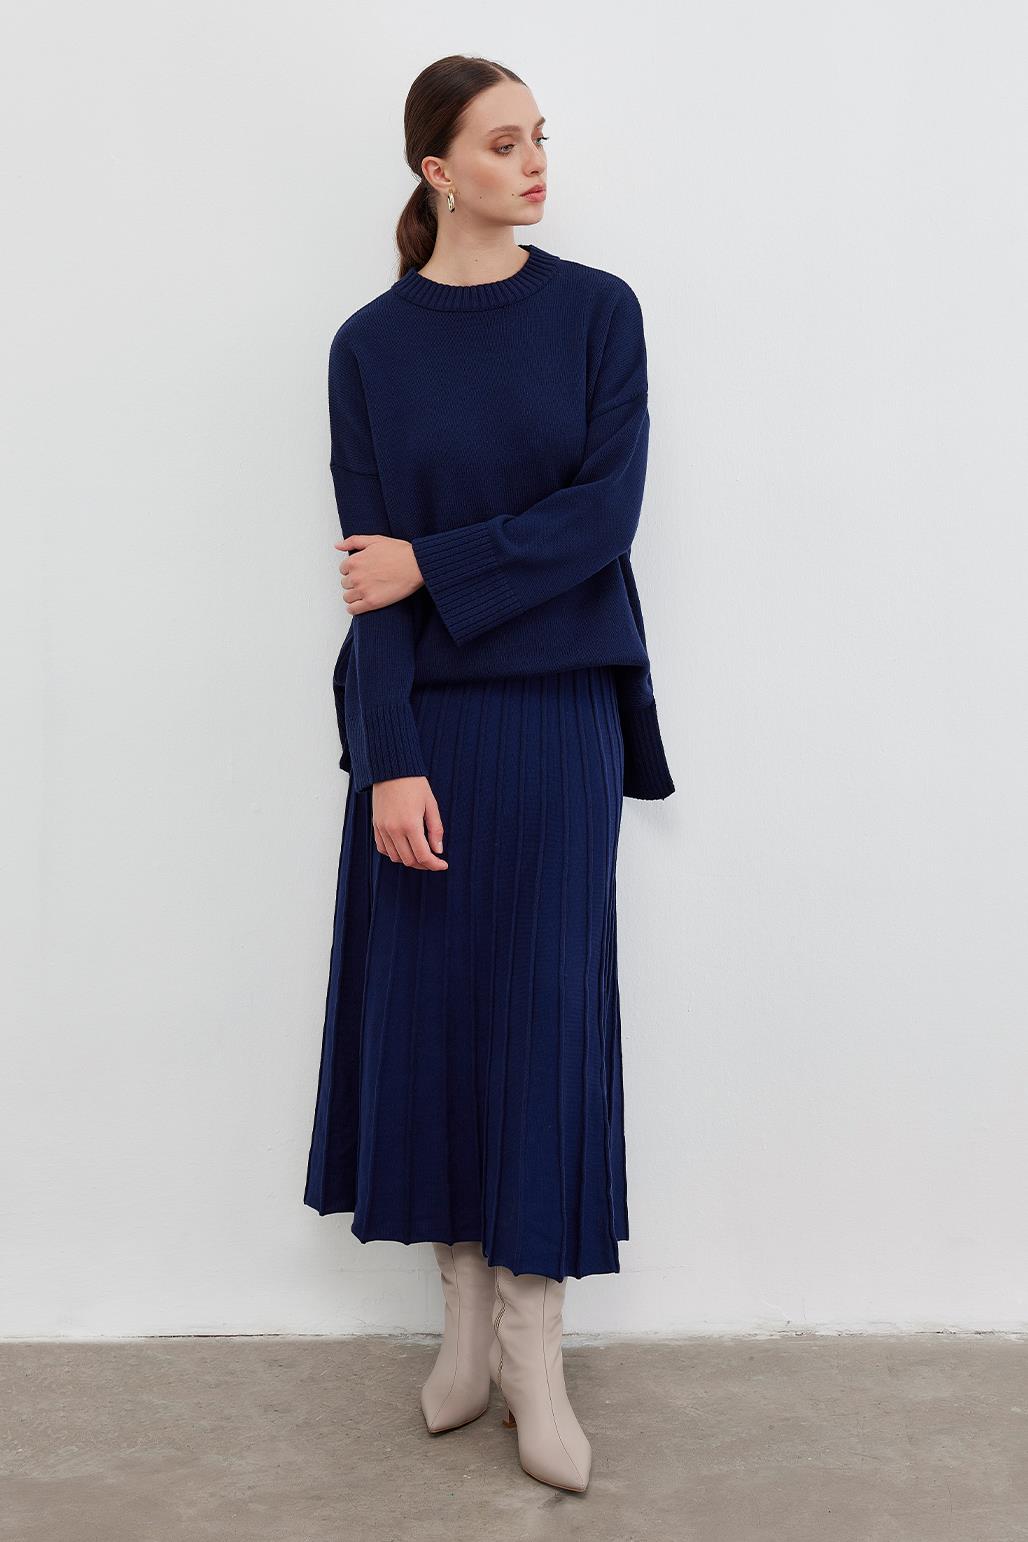 Knitwear Pleated Skirt Navy Blue